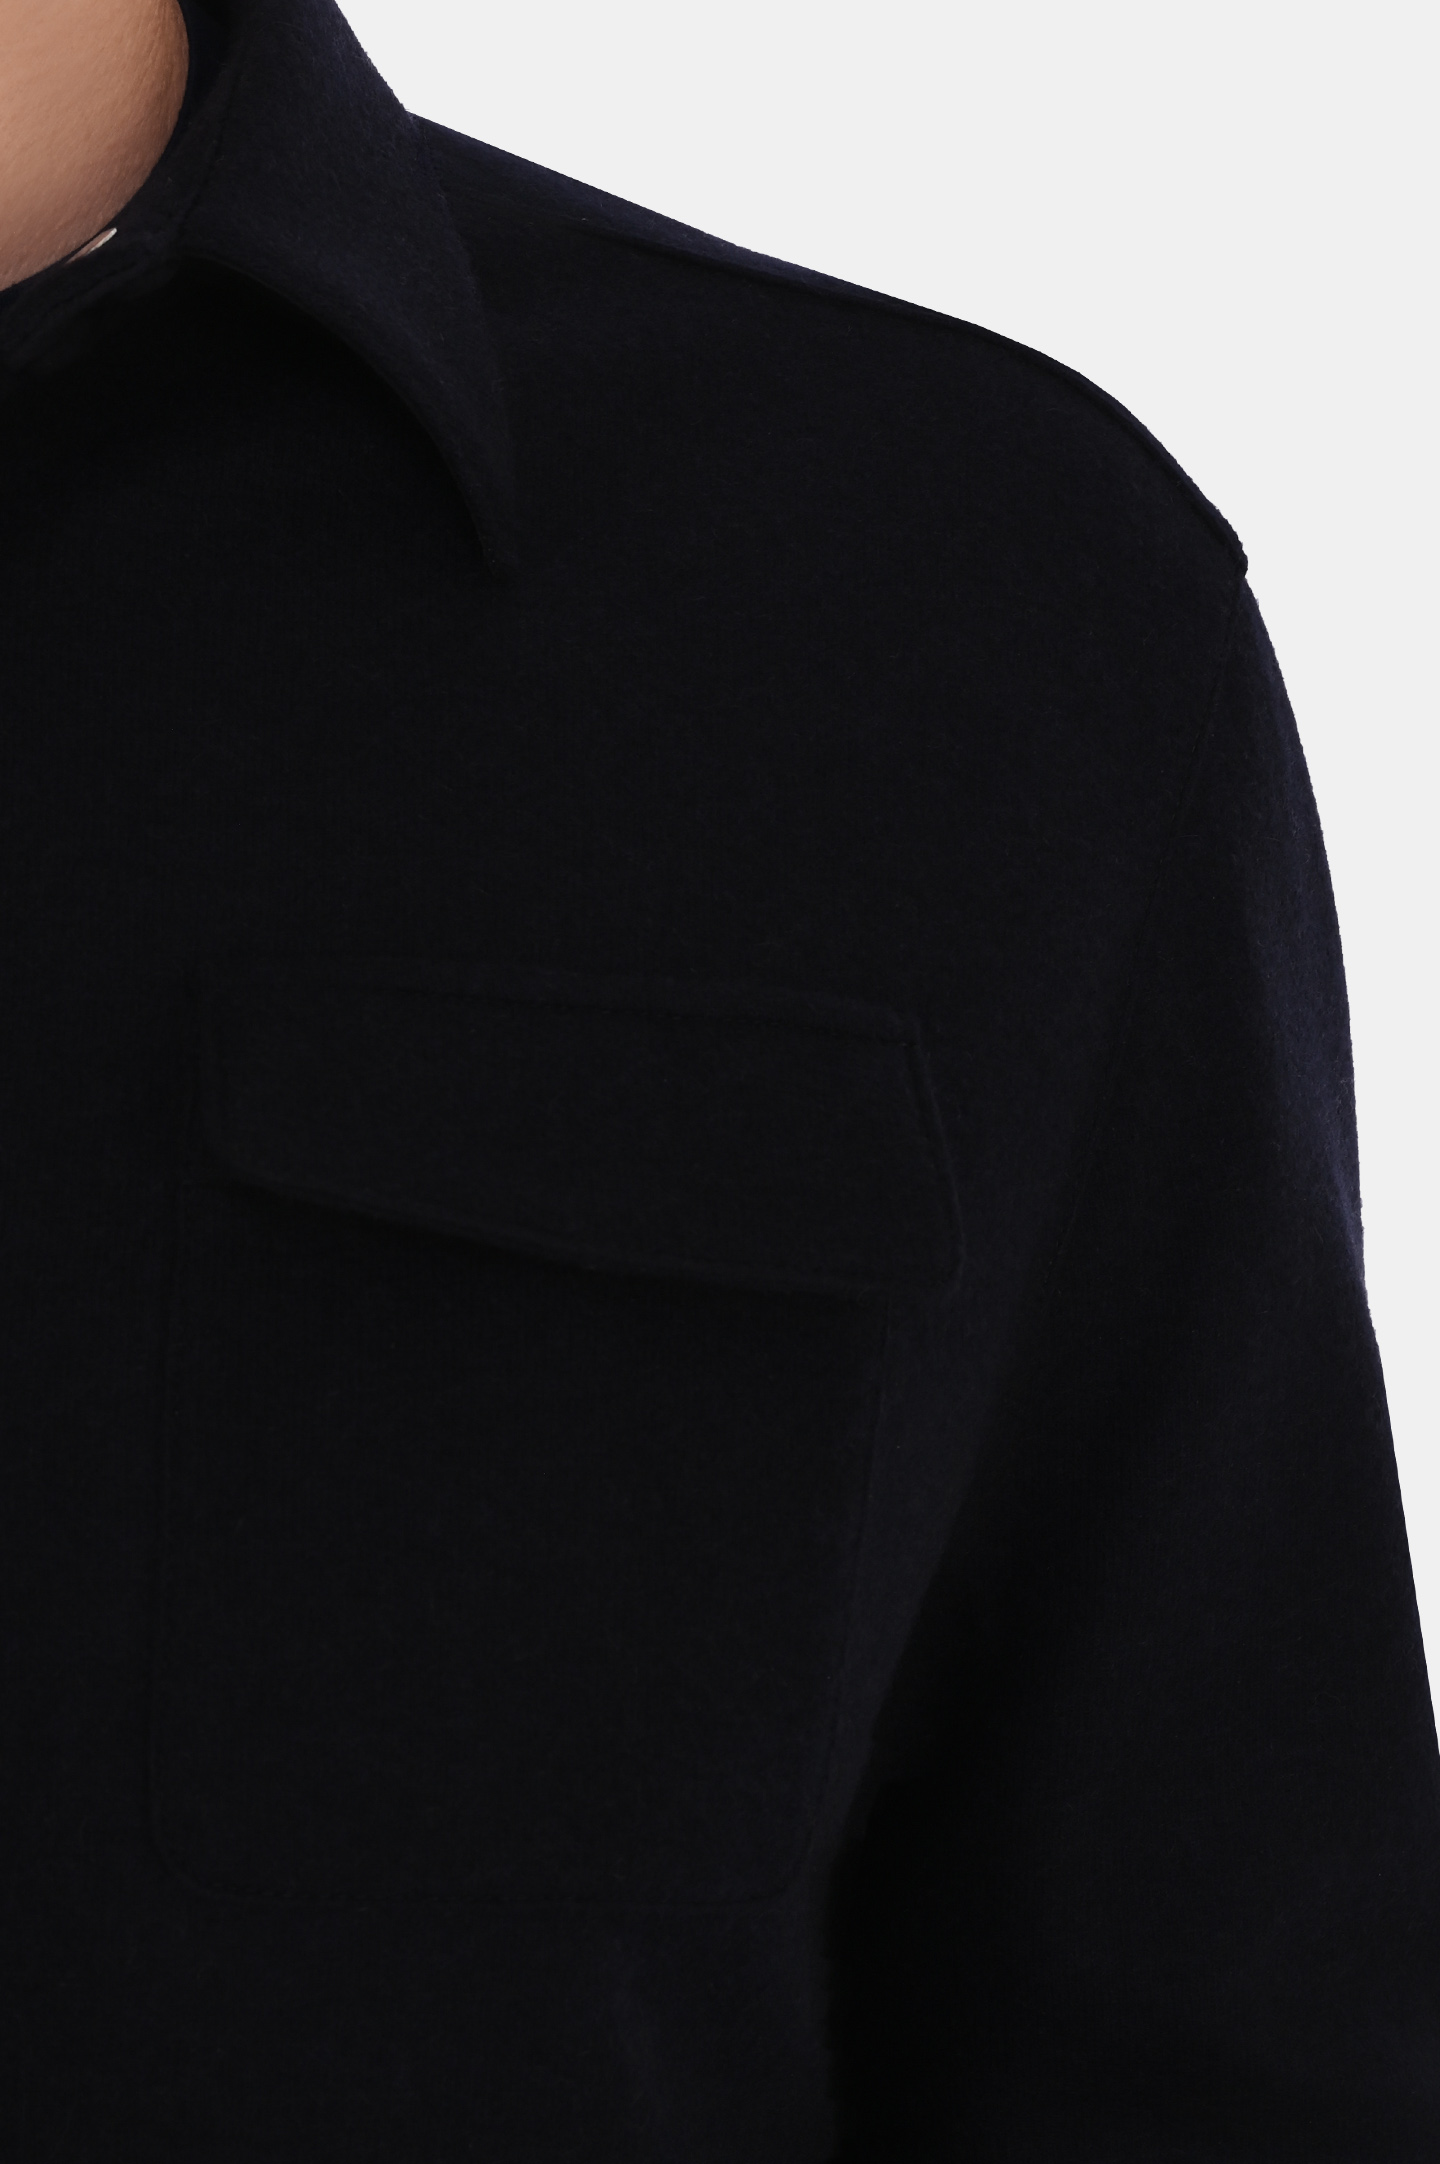 Куртка MANDELLI A23-A7T727-5239, цвет: Темно-синий, Мужской